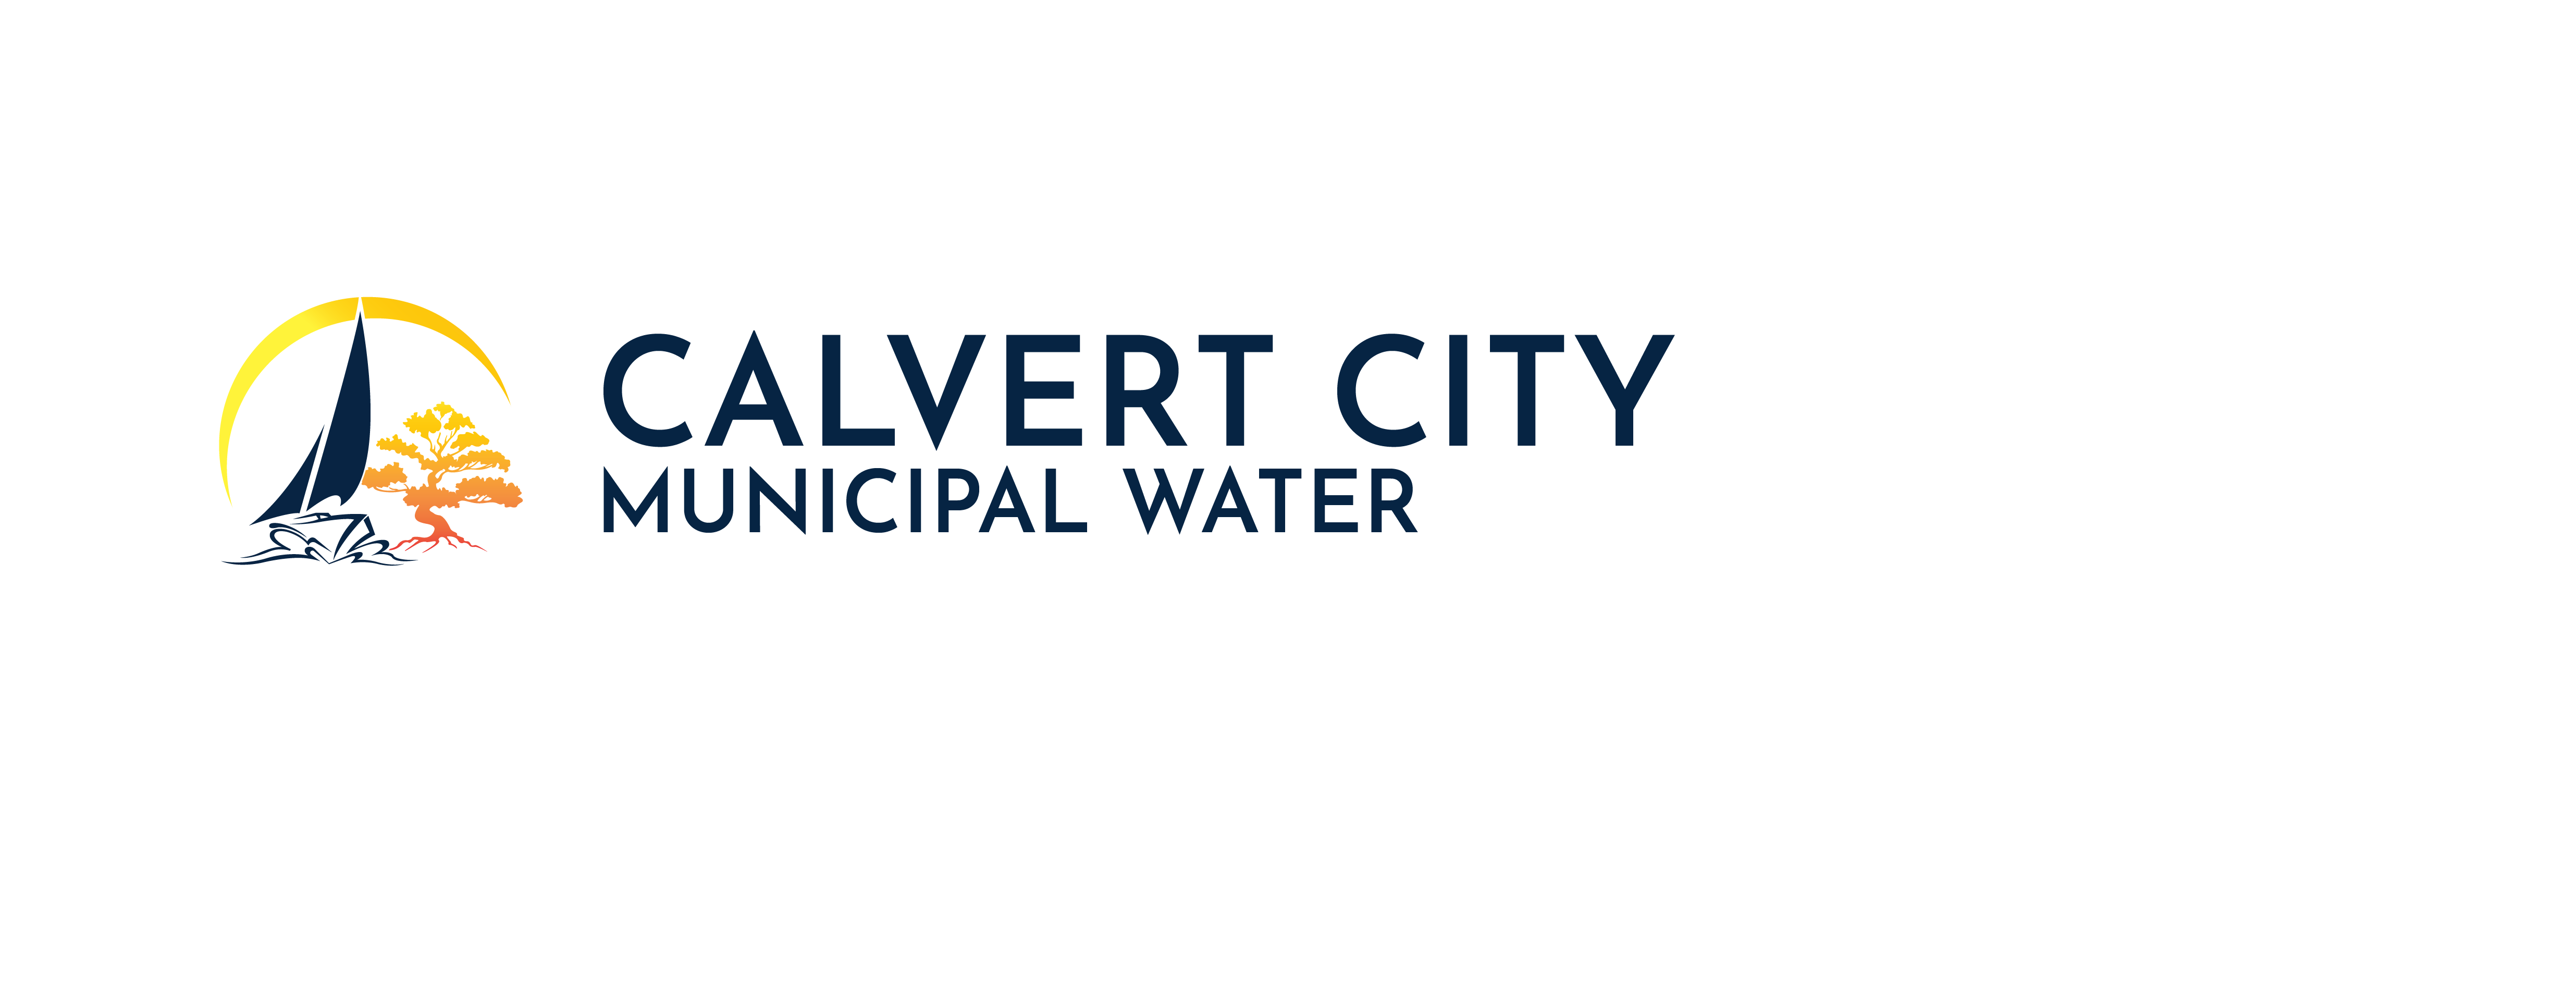 Calvert City Municipal